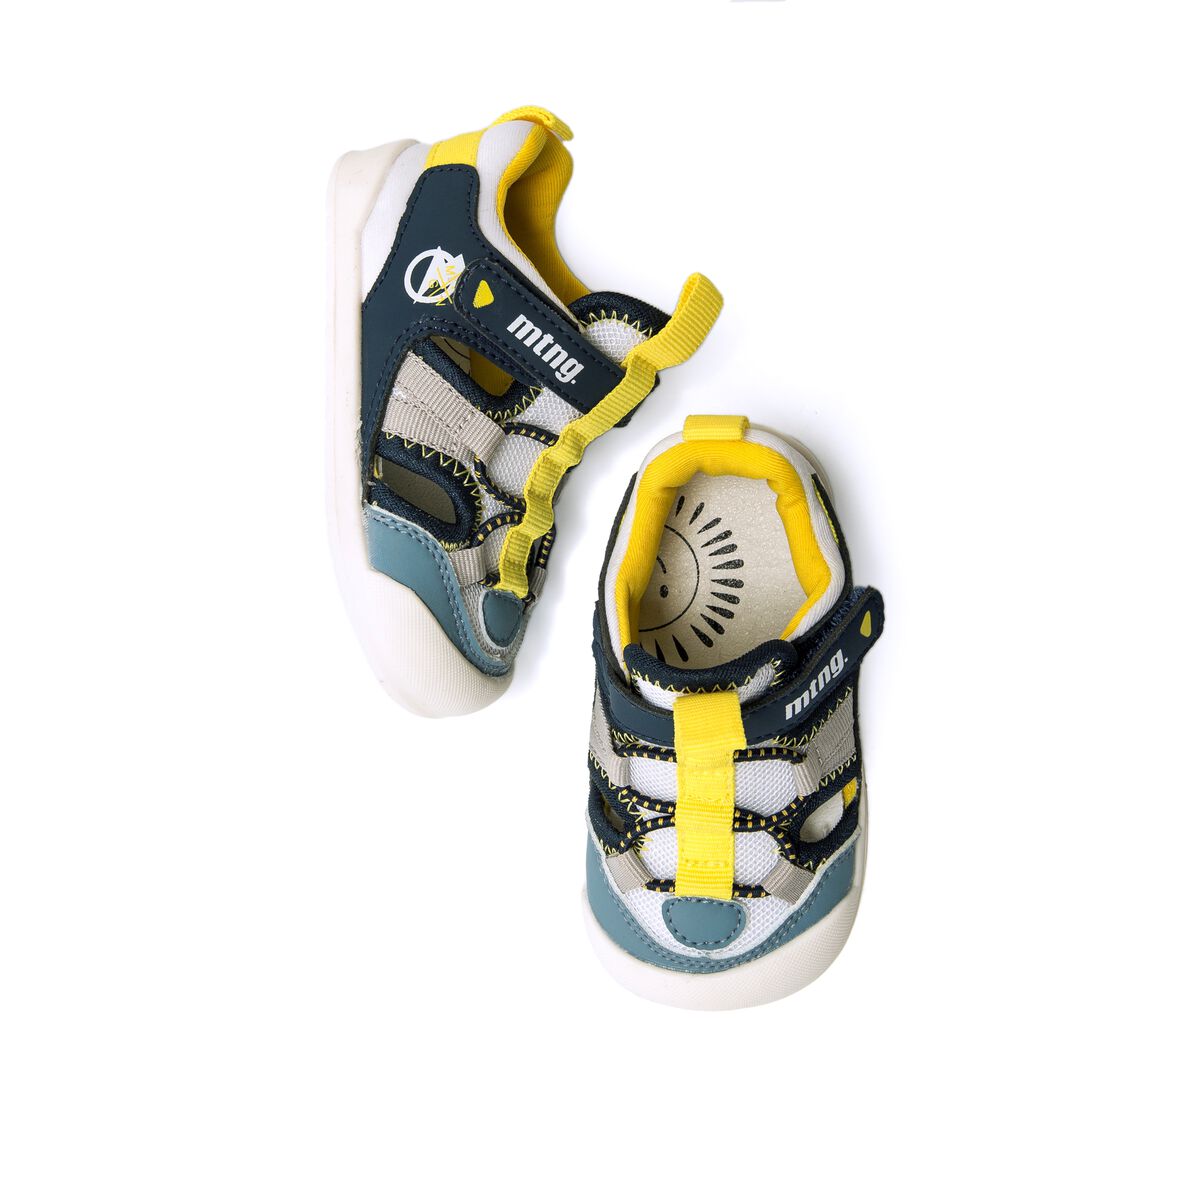 Sneakers de Rapaz modelo FREE BABY de MTNG image number 2